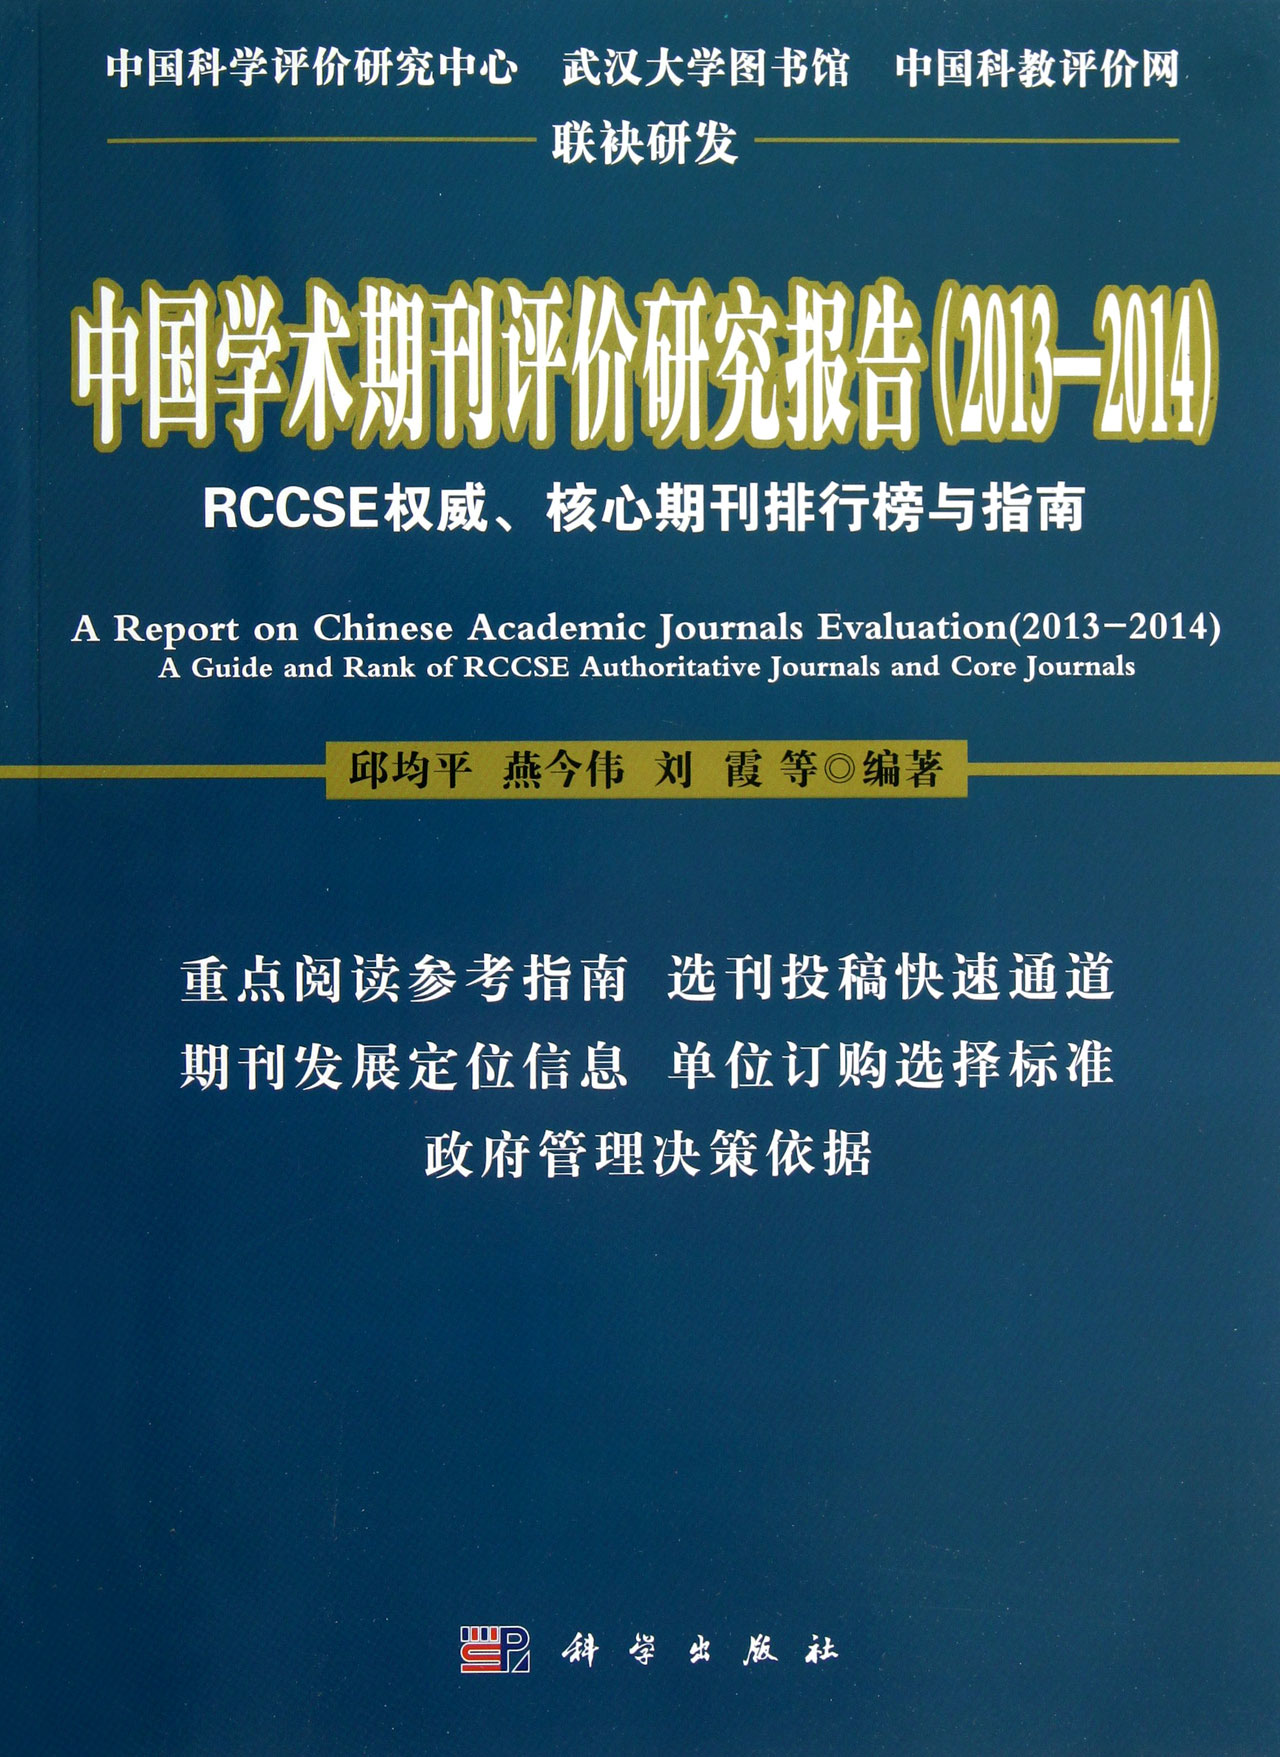 中國學術期刊評價研究報告(2013—2014)——RCCSE權威、核心期刊排行榜與指南